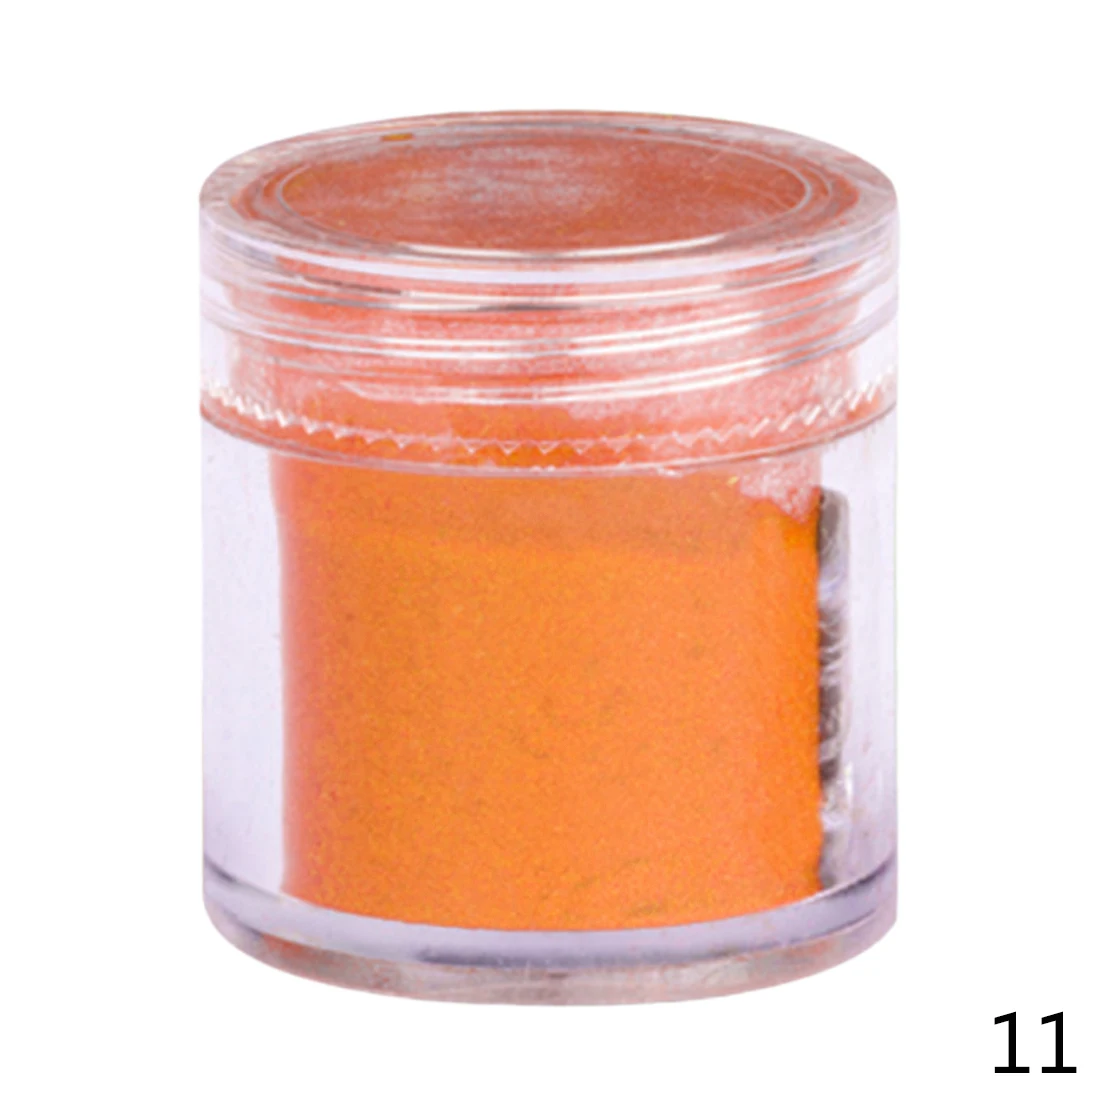 26 цветов DIY бархатный флокирующий порошок для бархатного маникюра, лак для ногтей, акриловые порошки жидкостей 10 г - Цвет: Orange